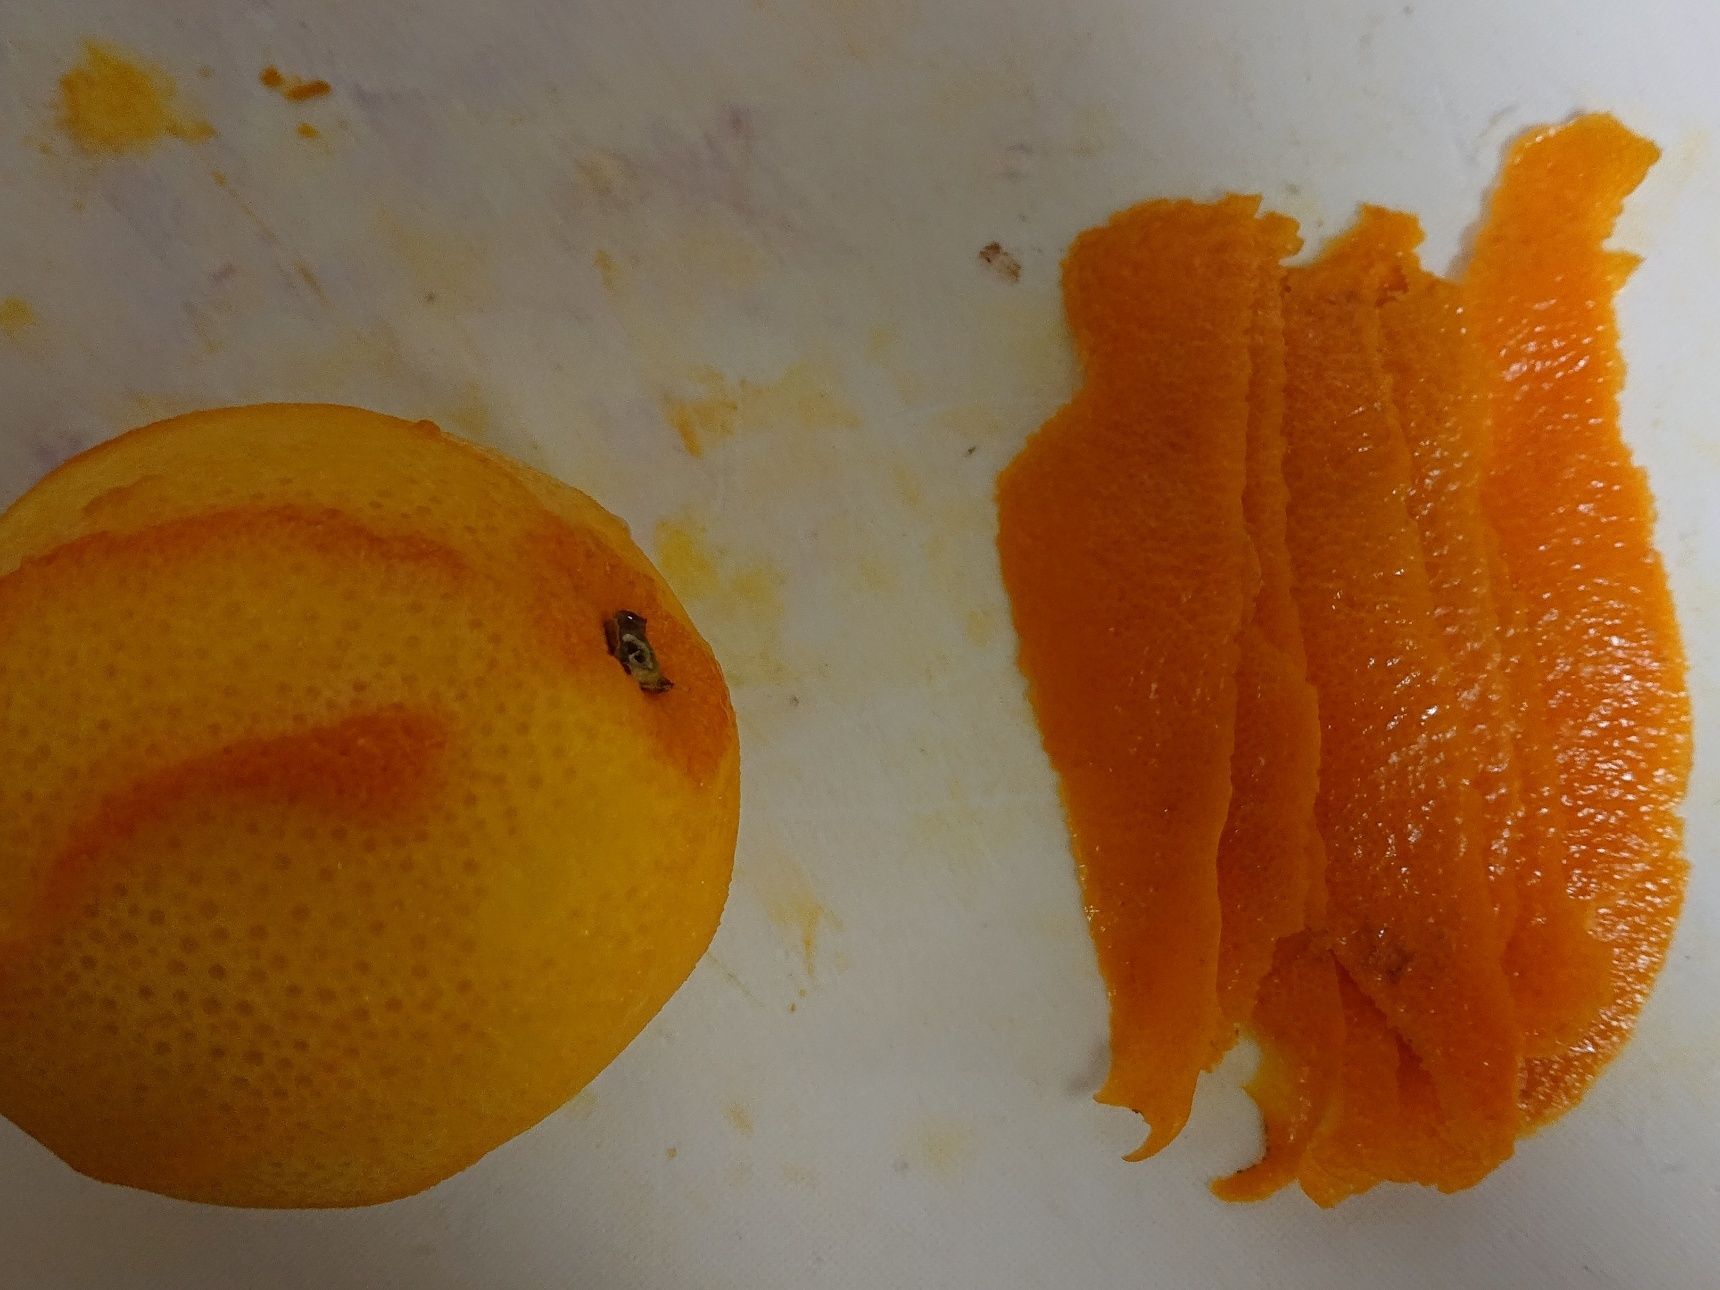 オレンジ1個分のゼストと果汁を用意する。